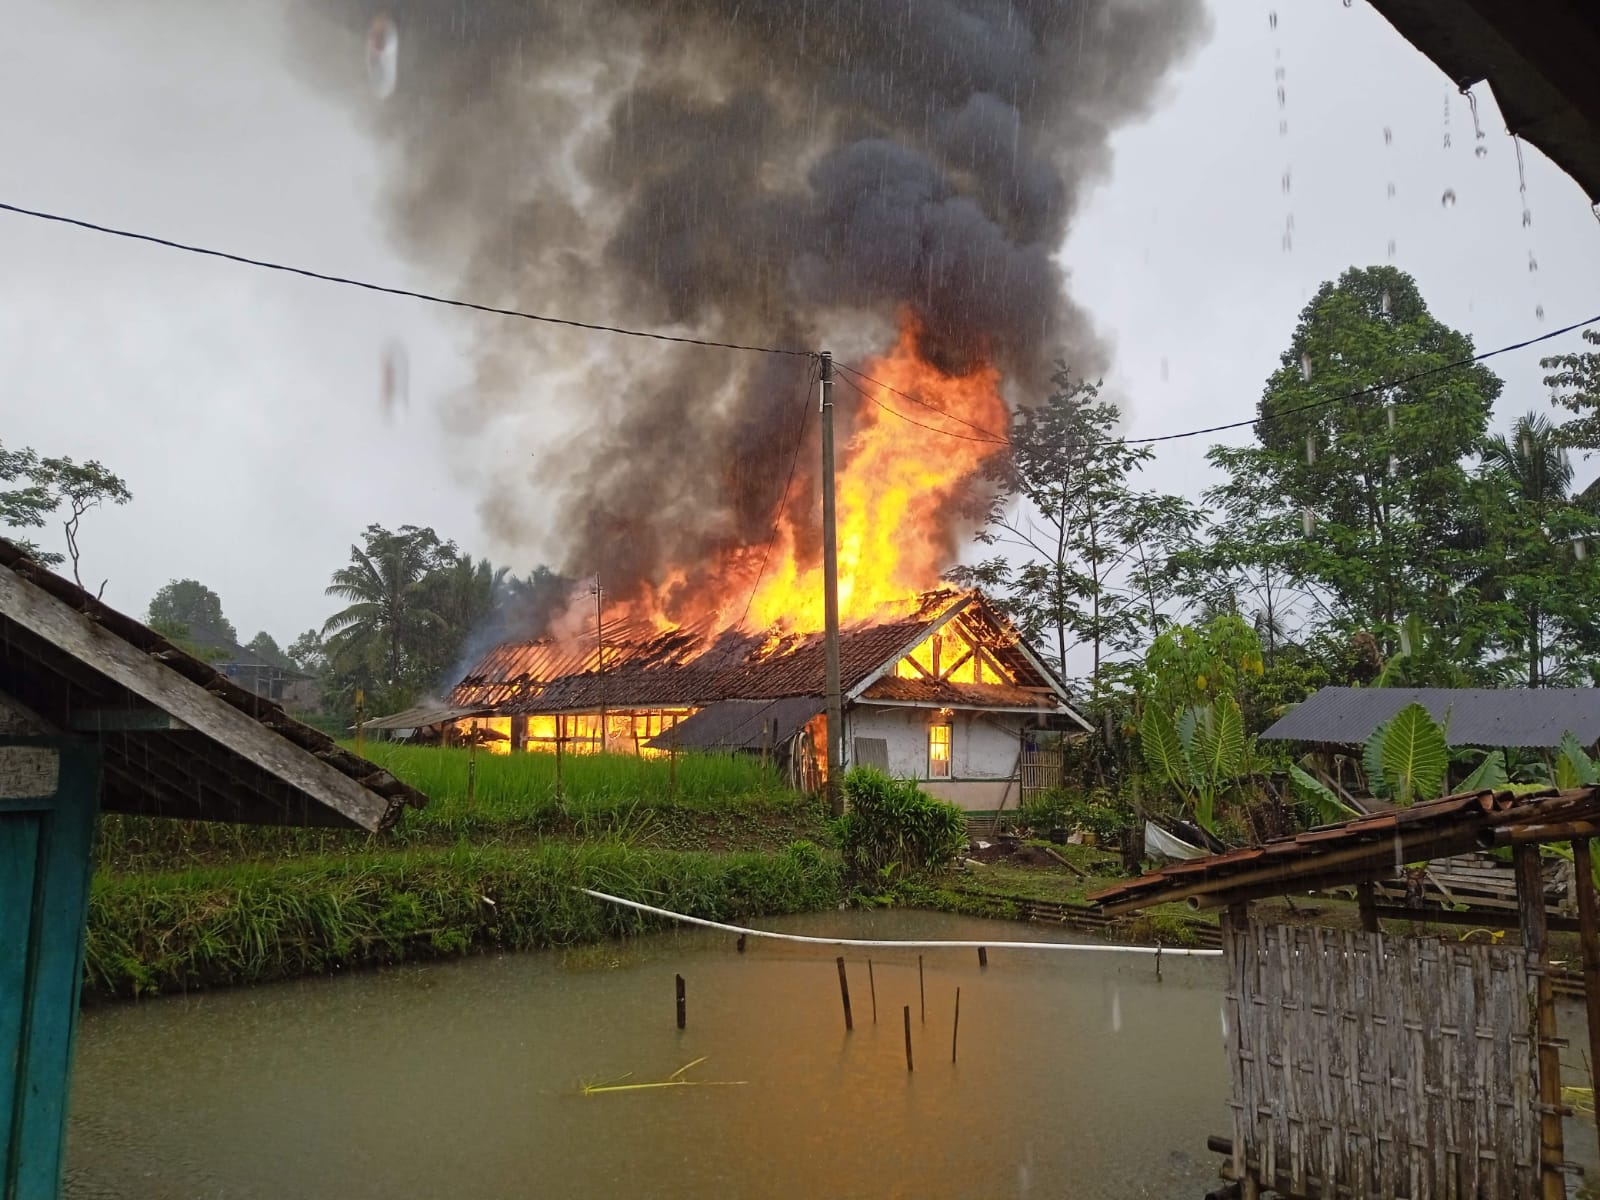 1 Jam Rumah Guru Ludes Terbakar, Kerugian Mencapai Rp100 Juta 